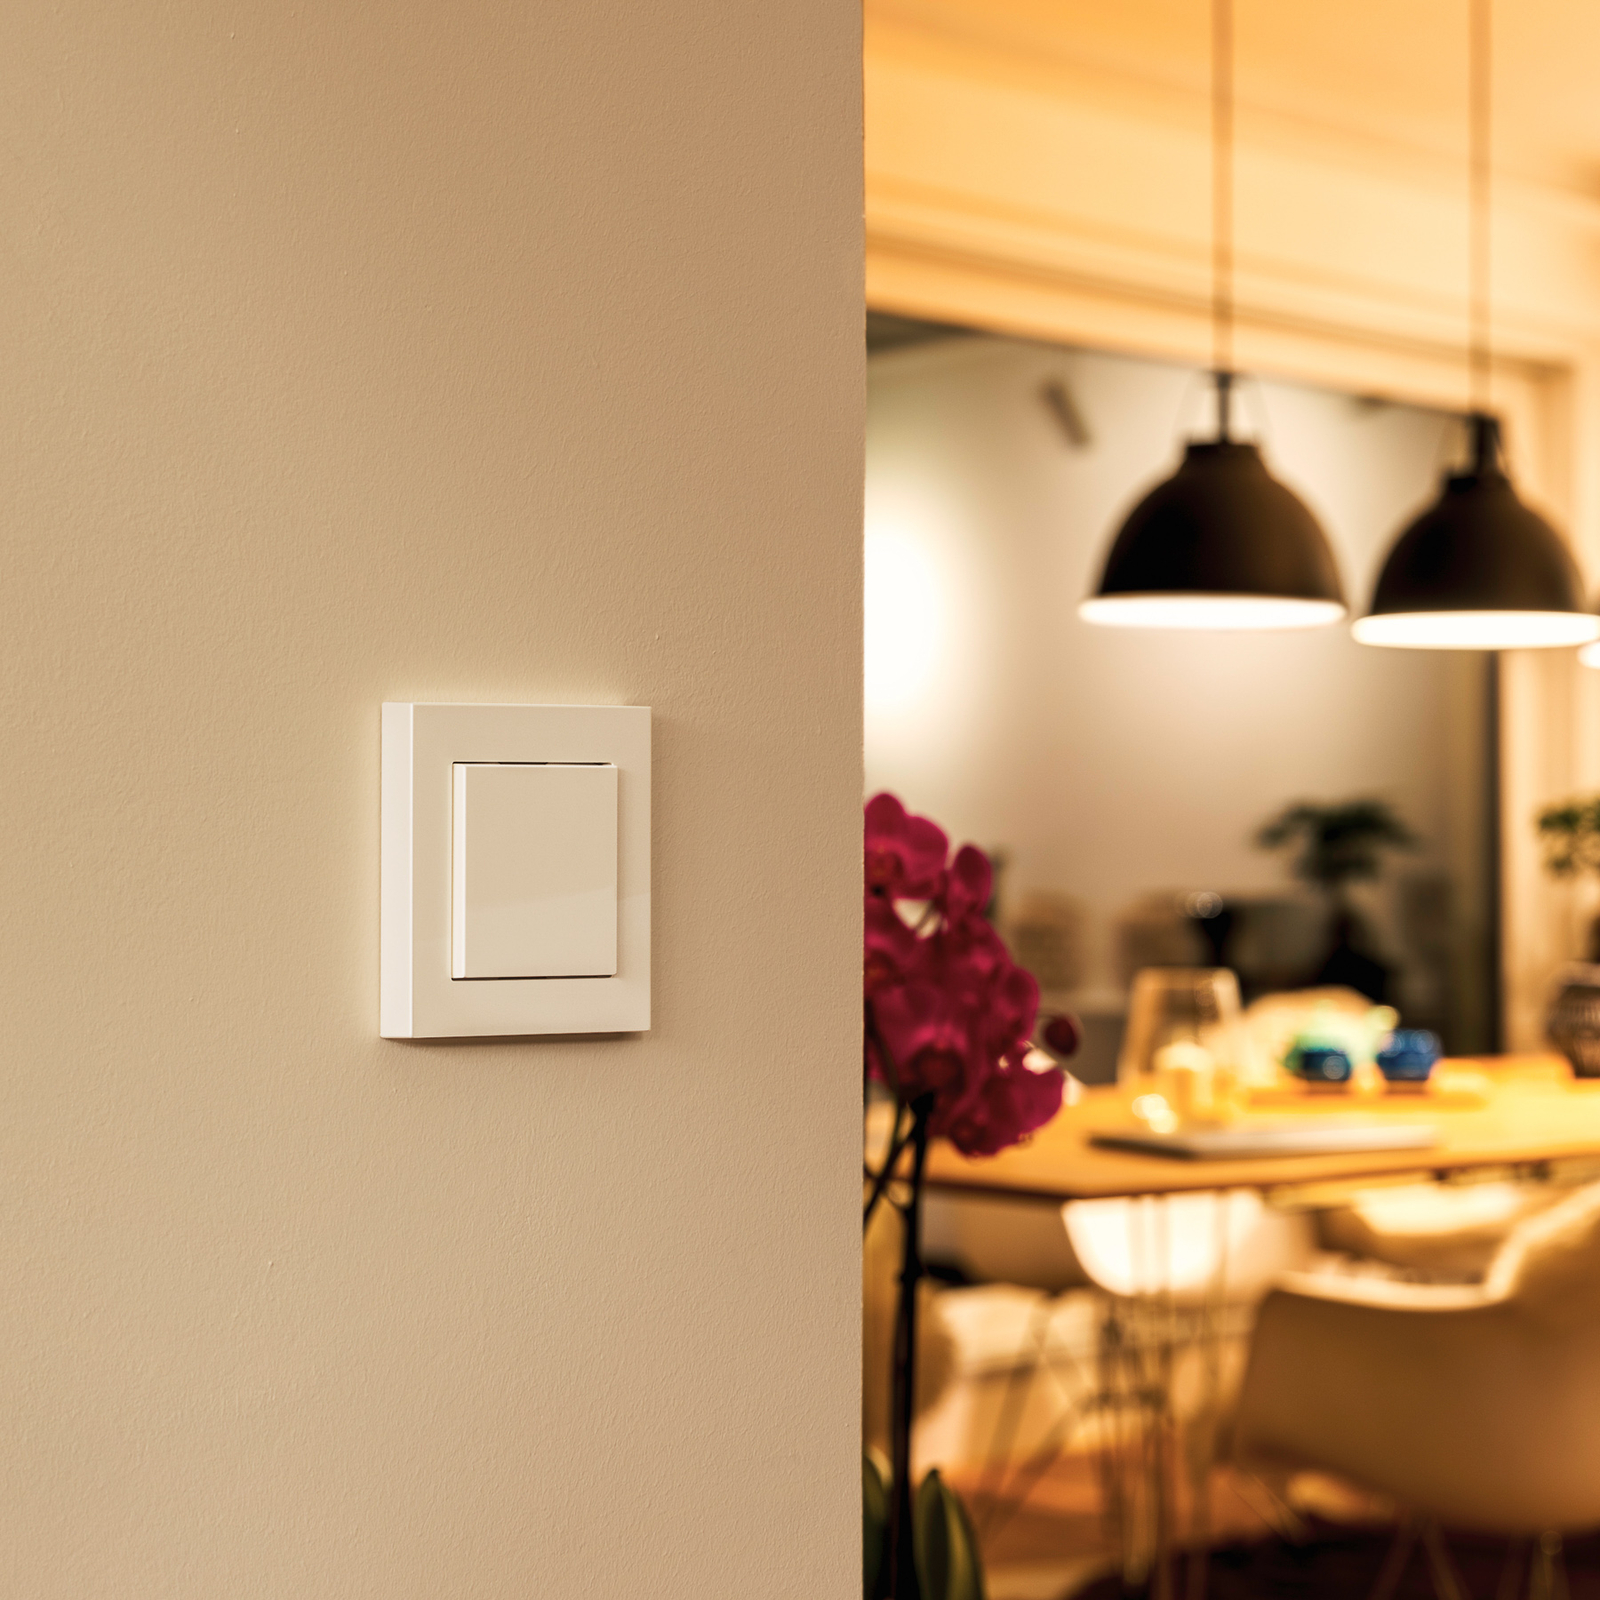 Eve Light Switch Smart Home interrupteur mural